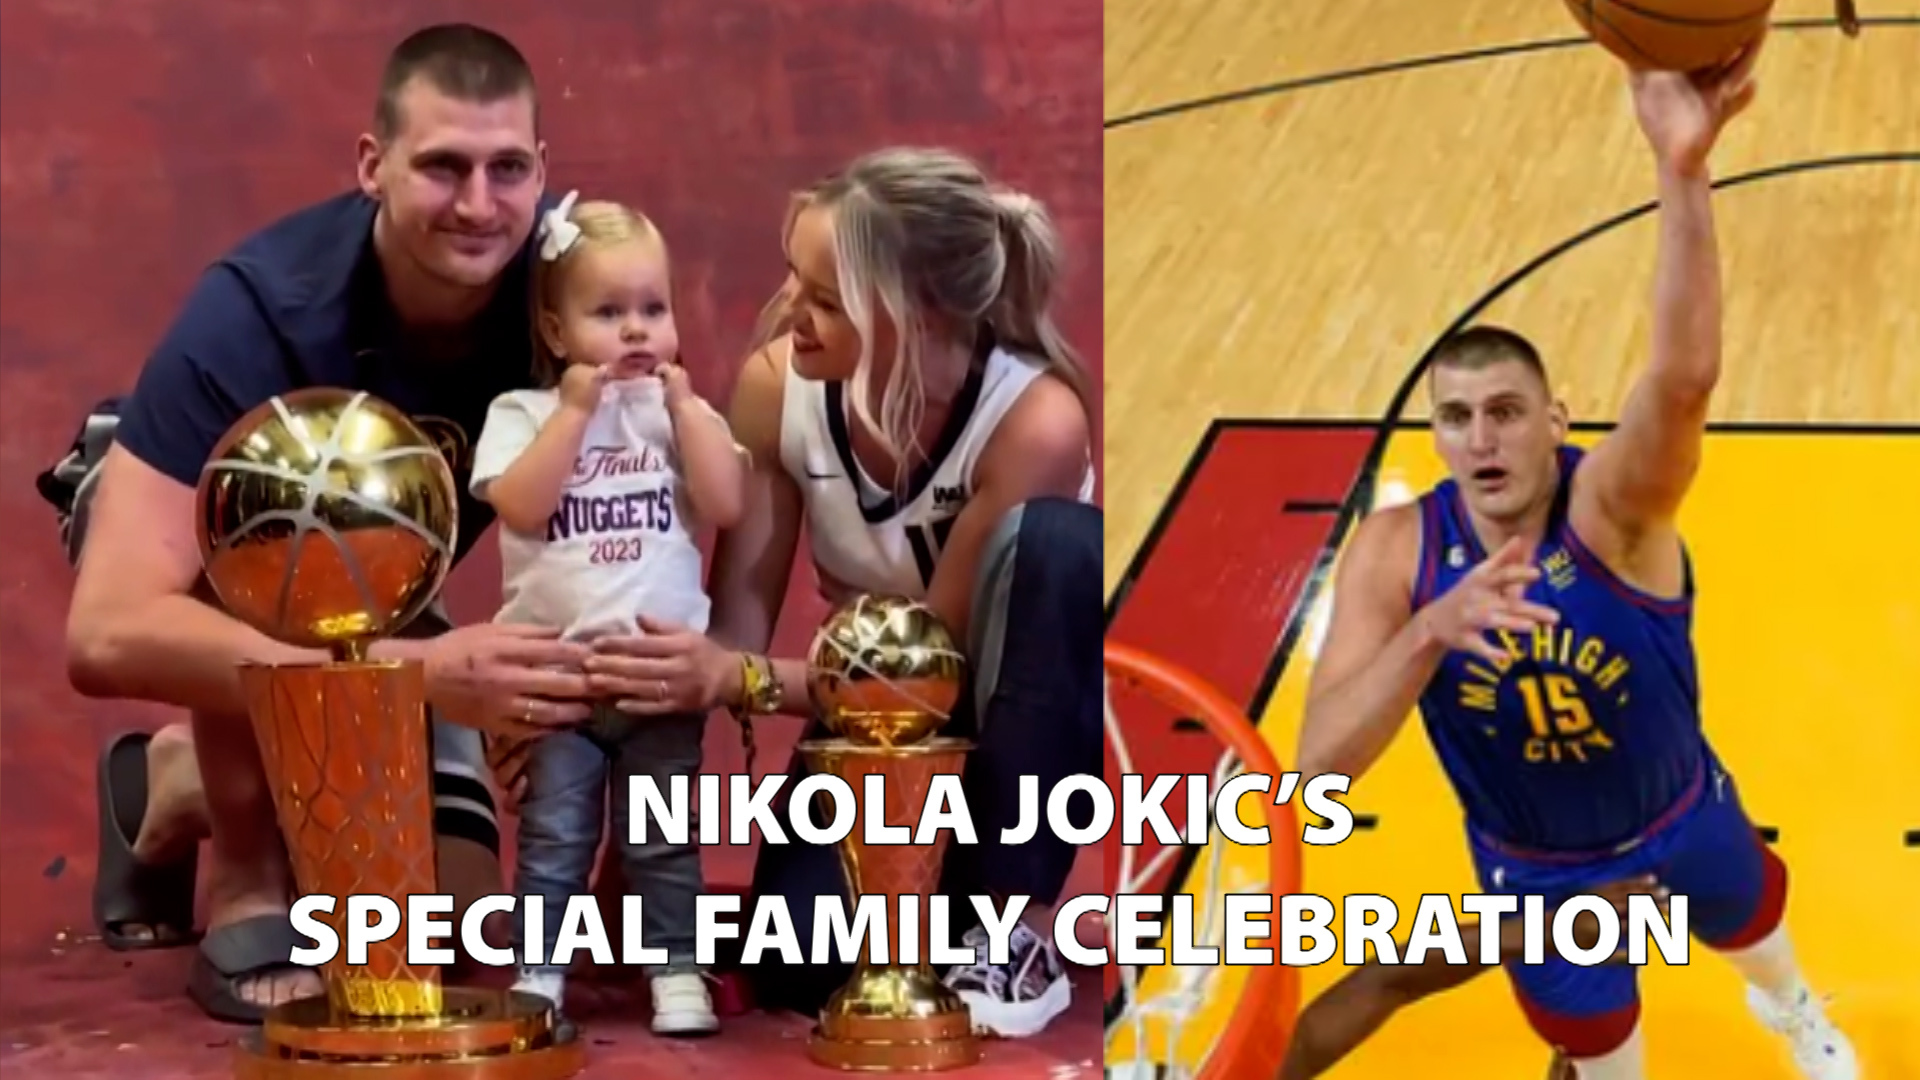 Nikola Jokic's adorable celebration with family after NBA triumph